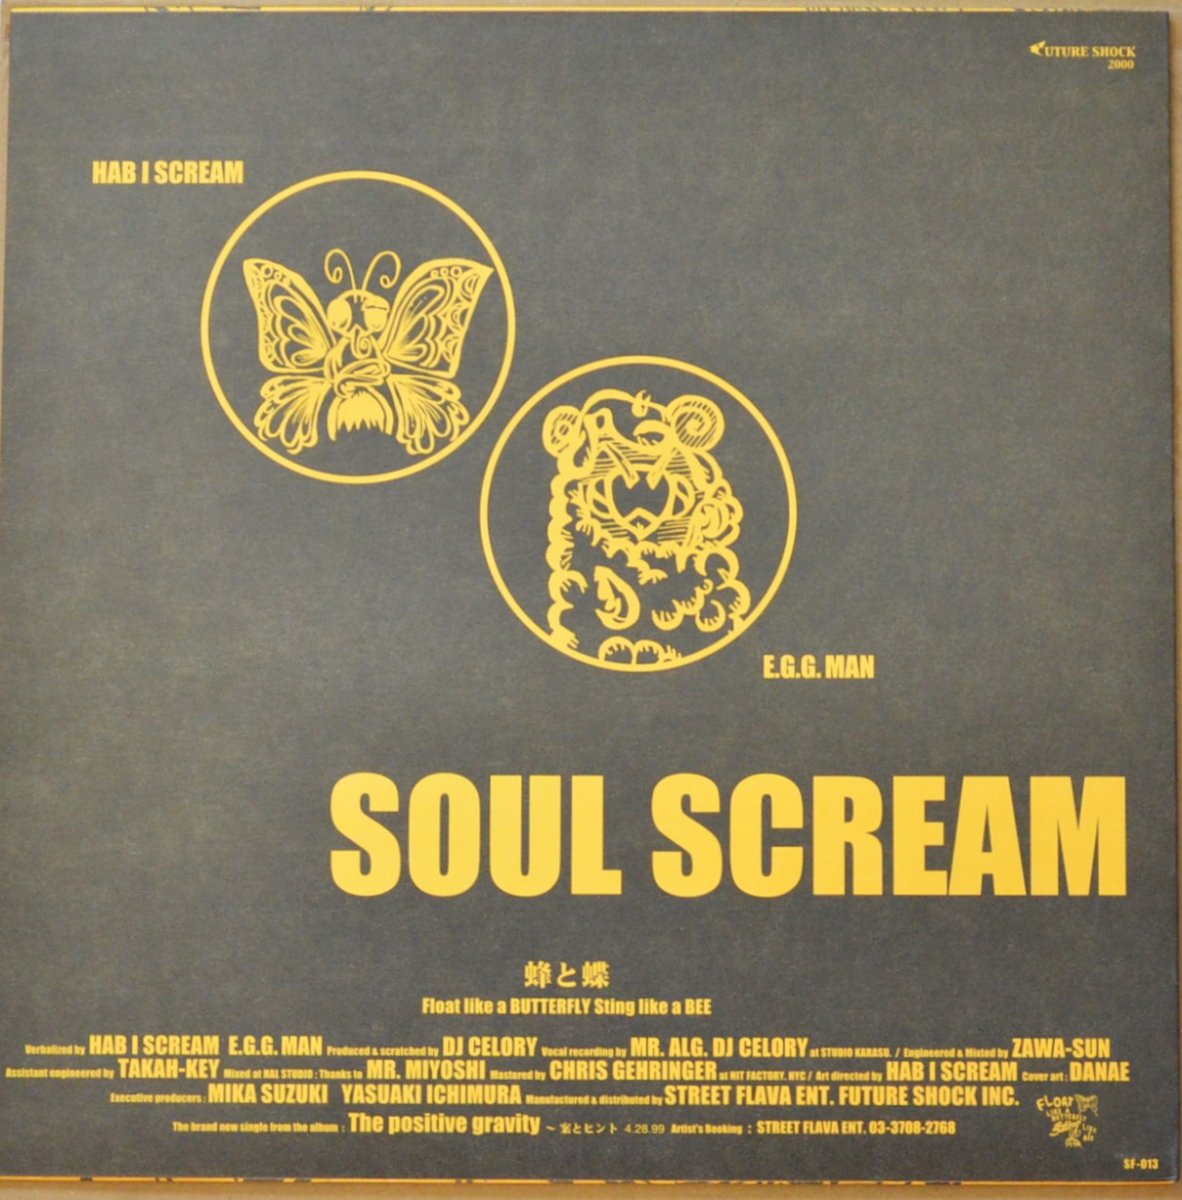 Soul Scream – 蜂と蝶 12 レコード - 邦楽